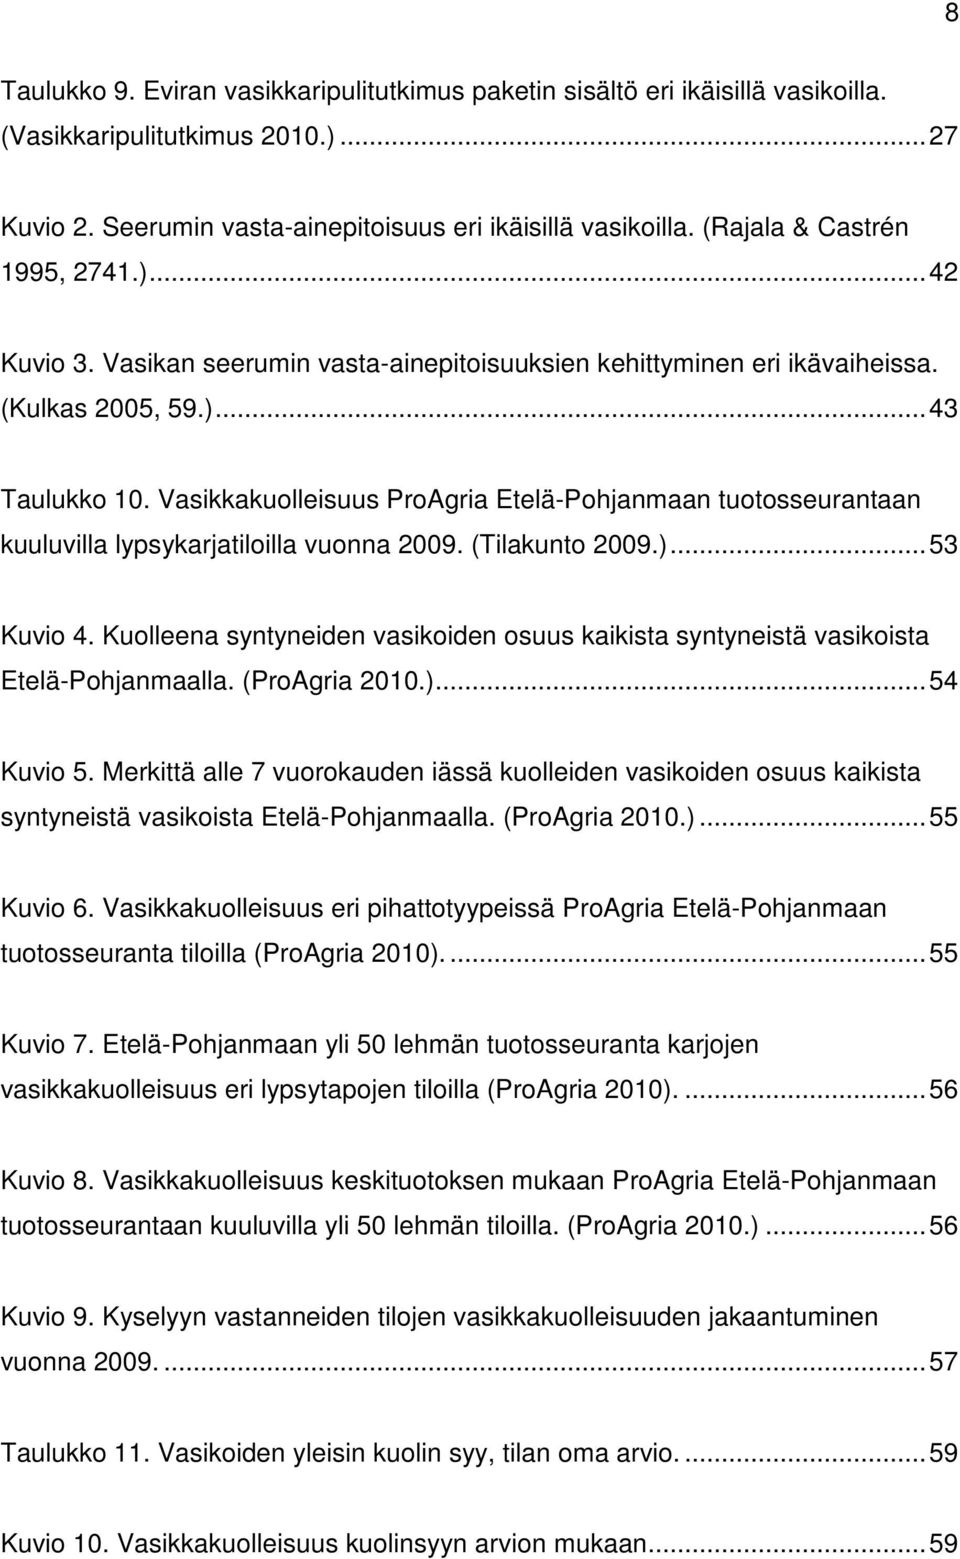 Vasikkakuolleisuus ProAgria Etelä-Pohjanmaan tuotosseurantaan kuuluvilla lypsykarjatiloilla vuonna 2009. (Tilakunto 2009.)... 53 Kuvio 4.